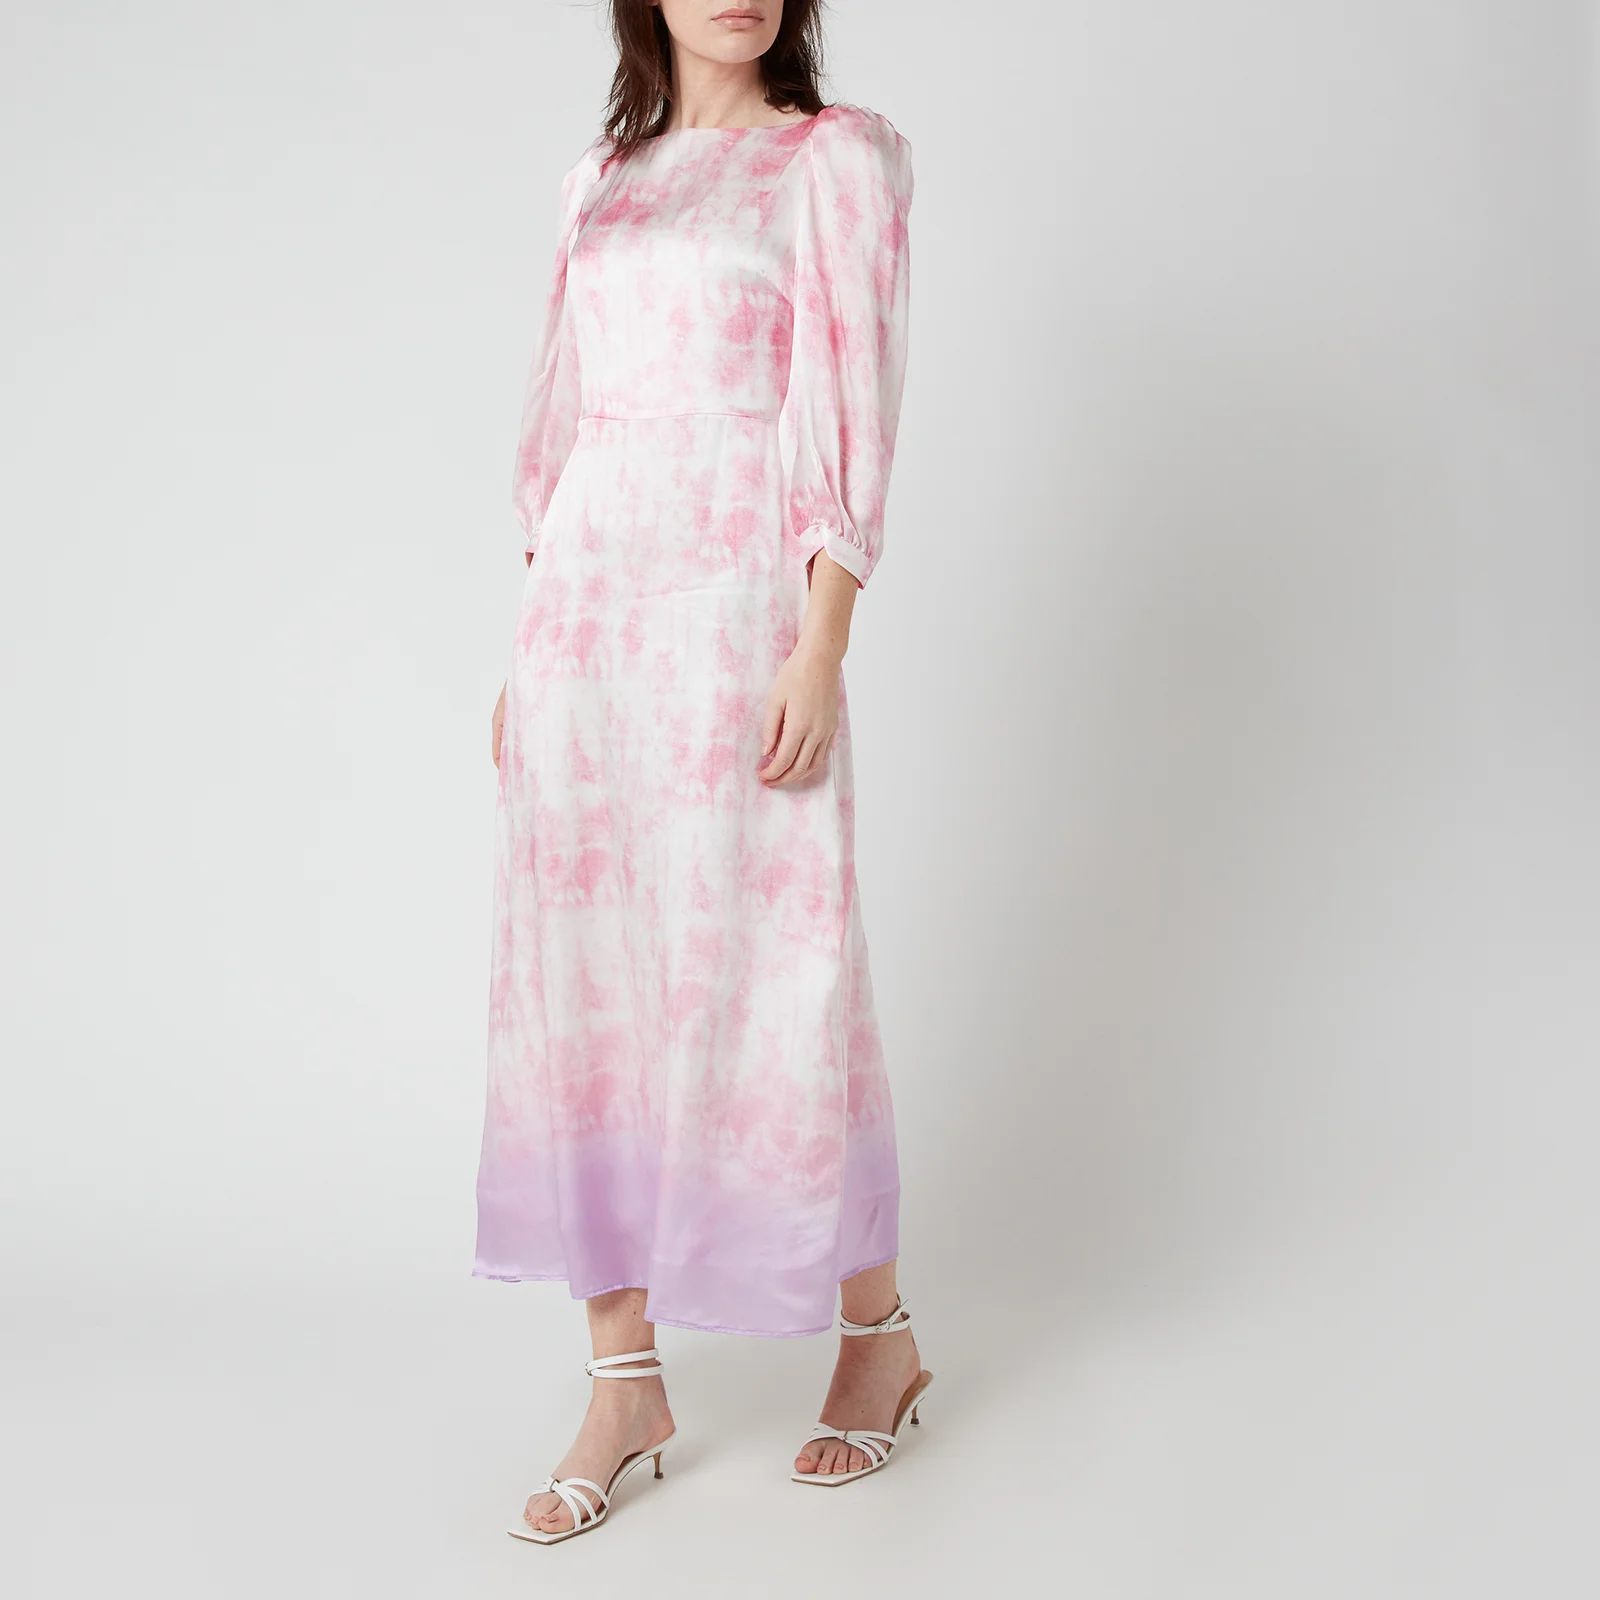 Olivia Rubin Women's Lara Dress - Tie Dye Image 1